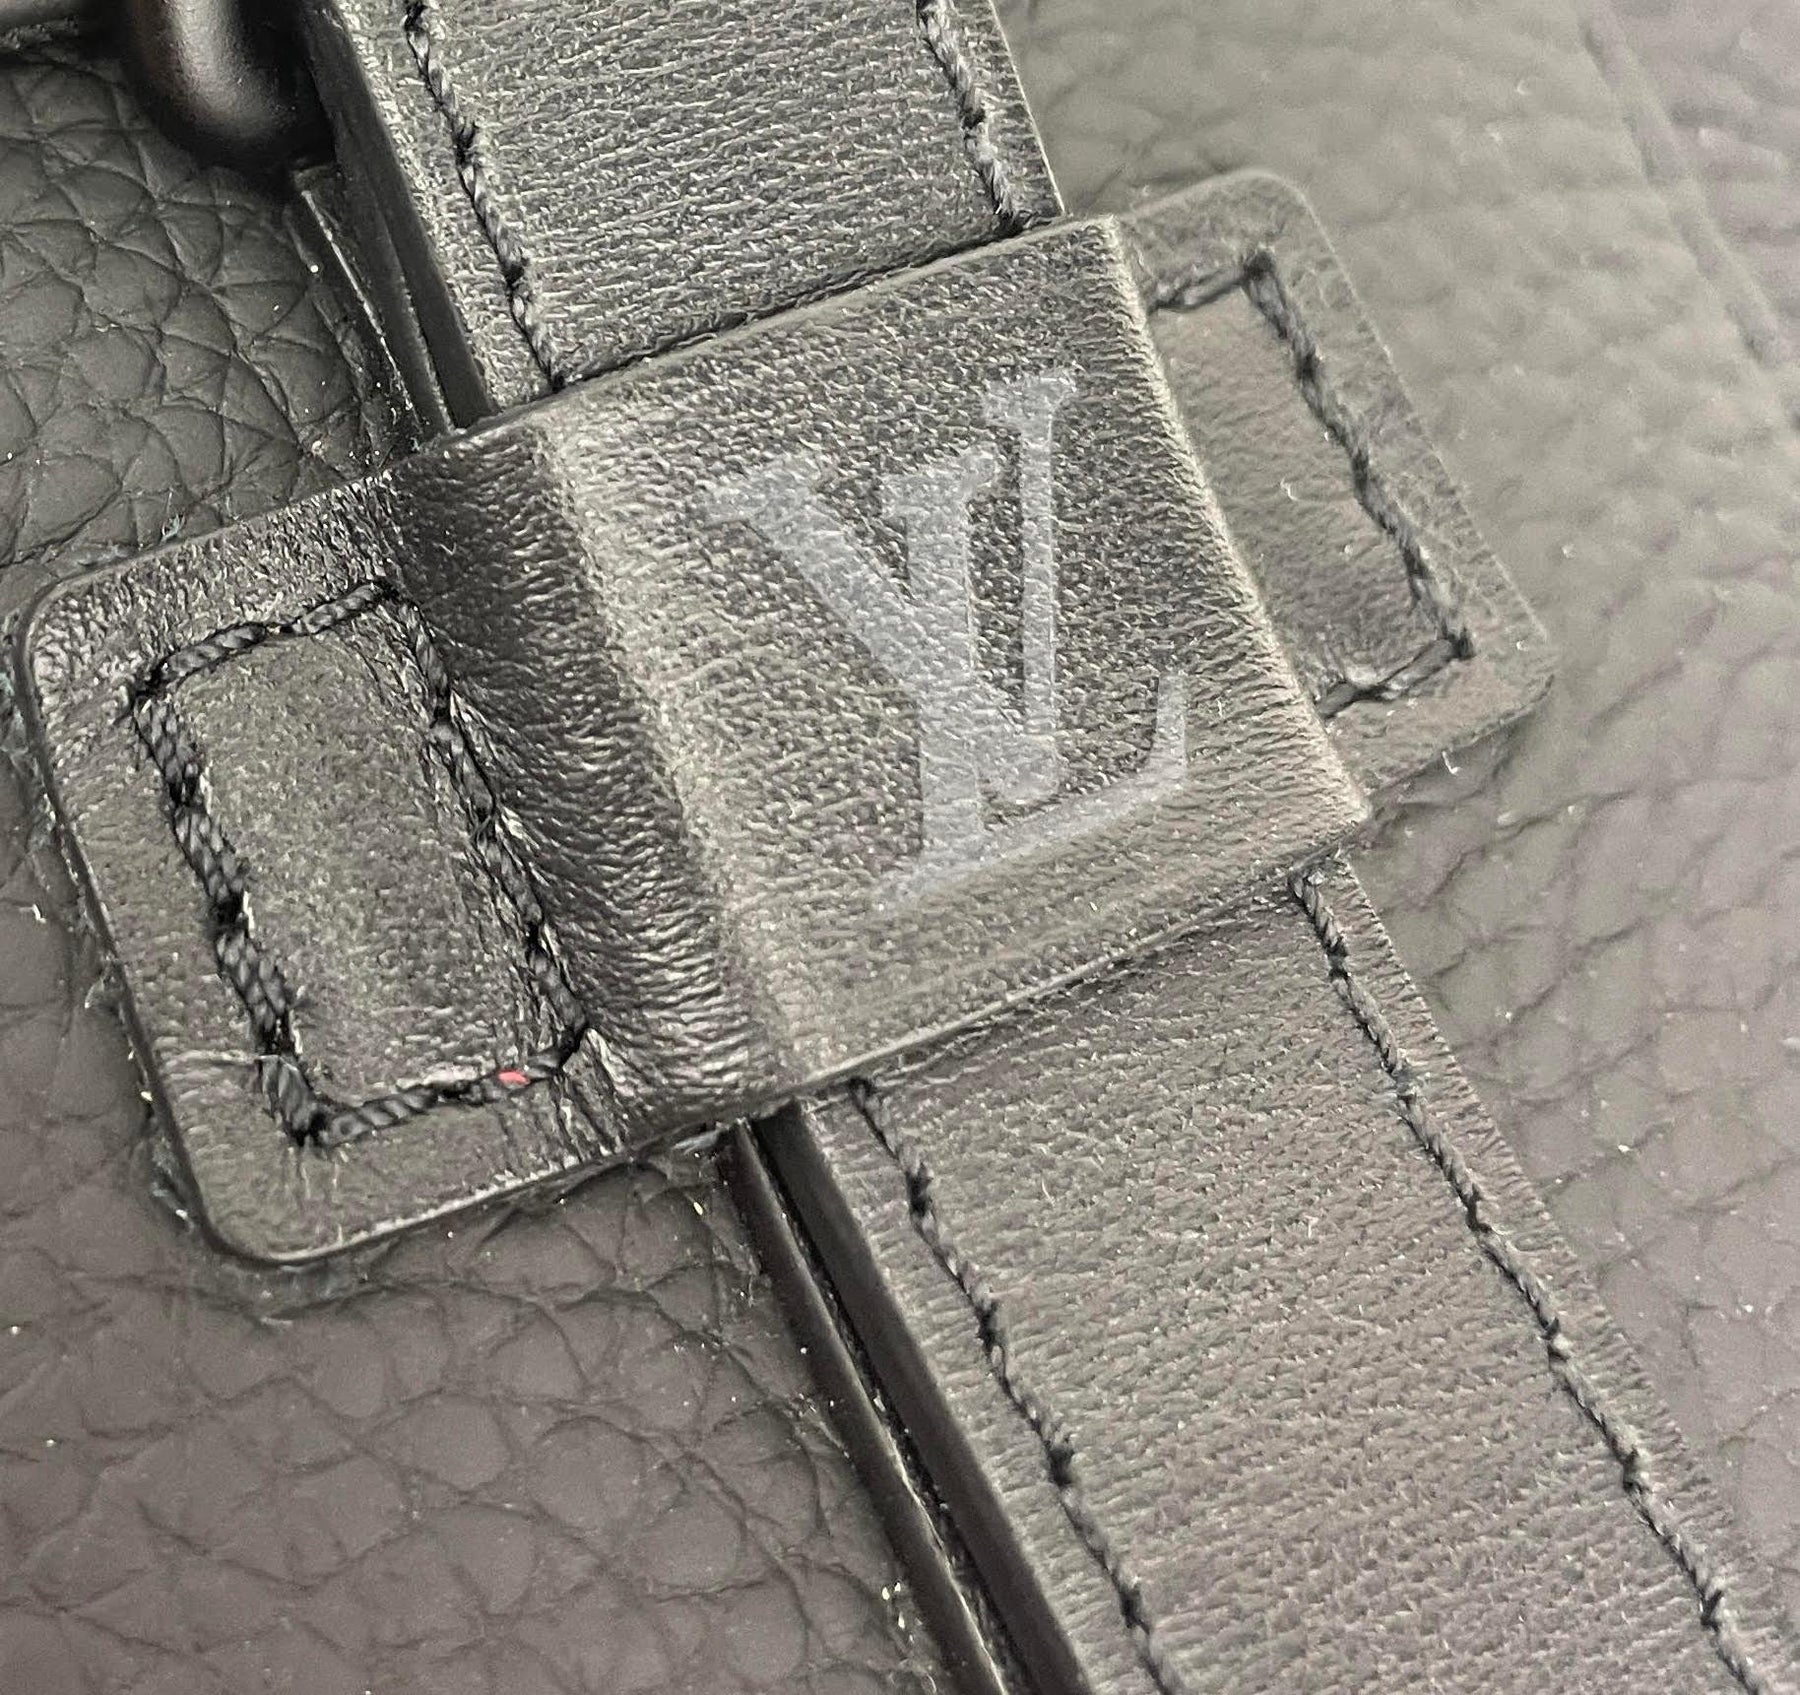 Louis Vuitton Dark Silver Taurillon Alpha Messenger - modaselle